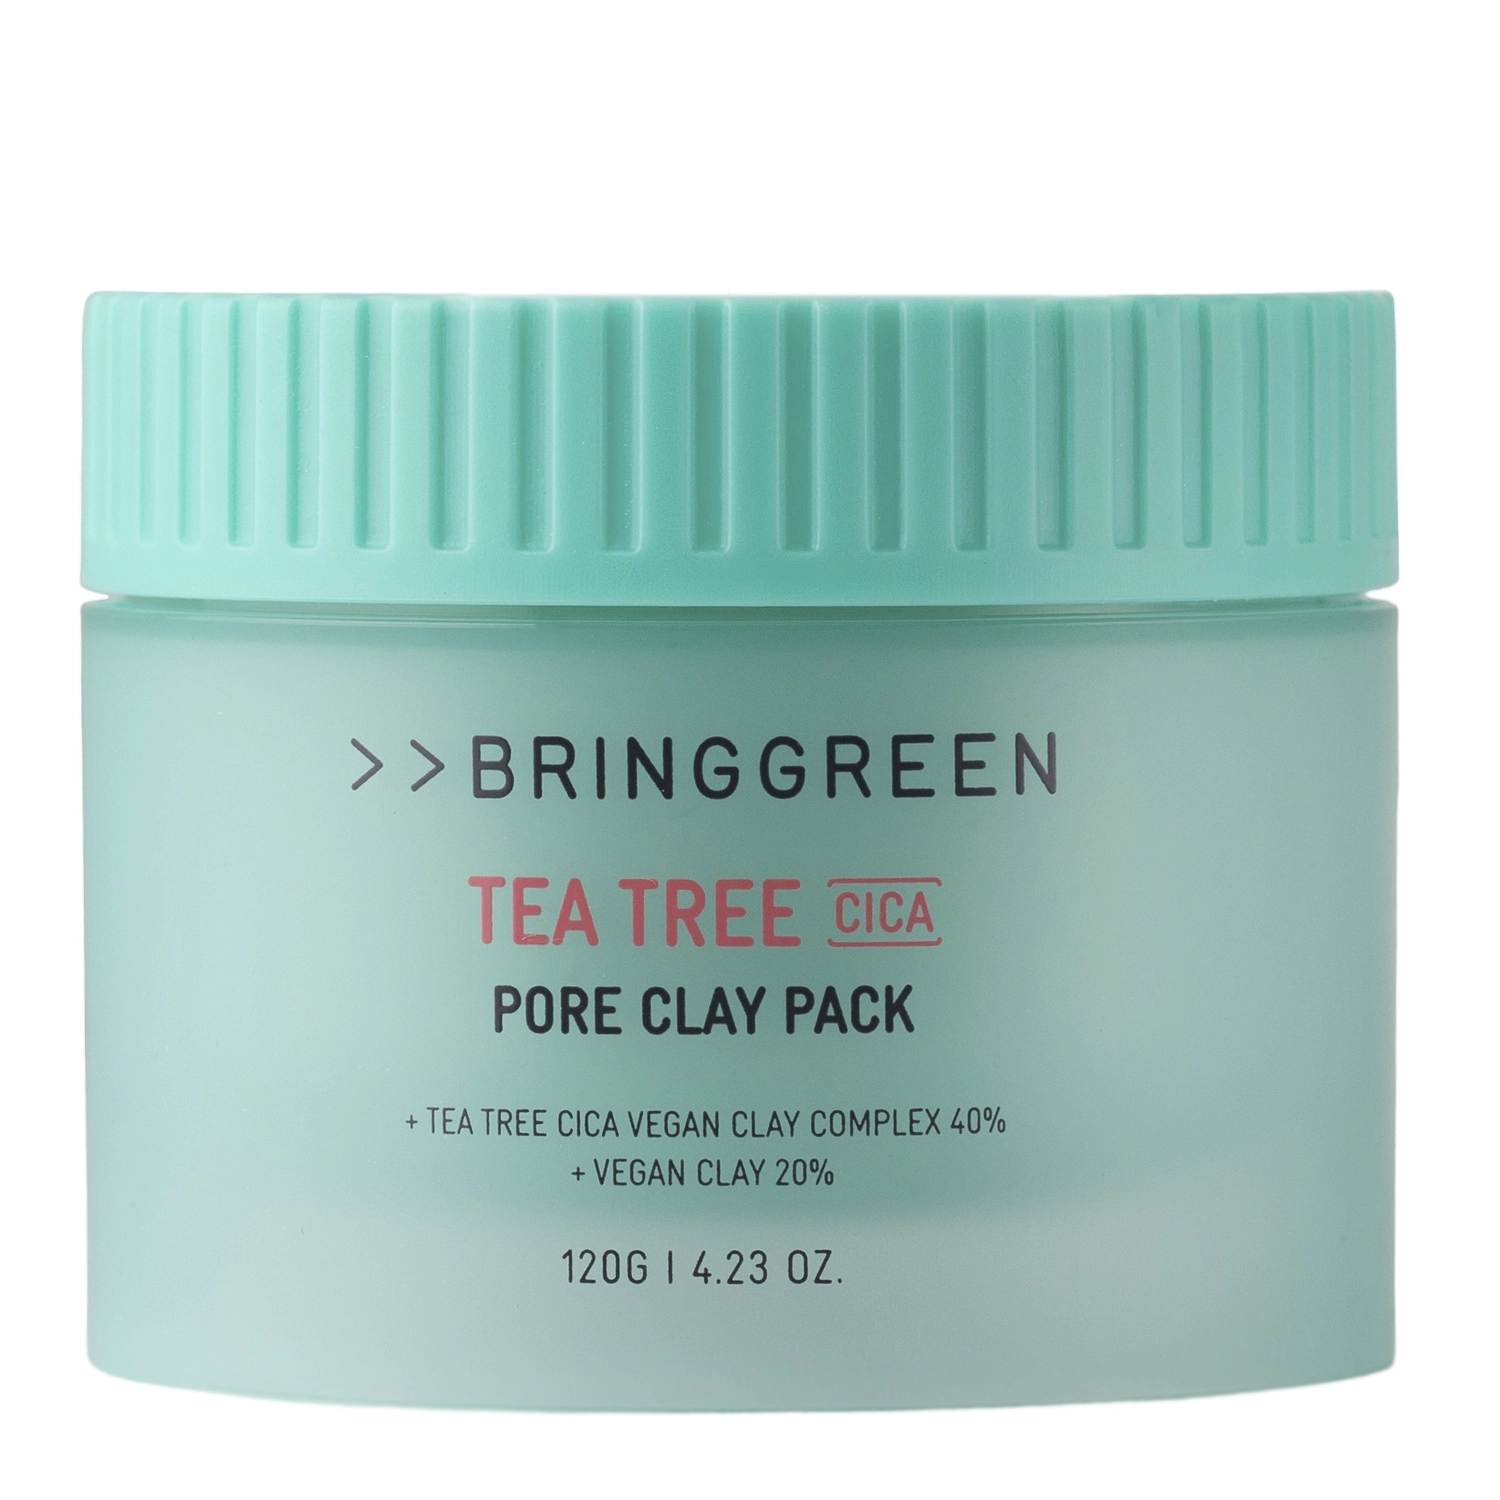 Bring Green - Tea Tree Cica Pore Clay Pack - Oczyszczająca Maska Glinkowa do Twarzy - 120g